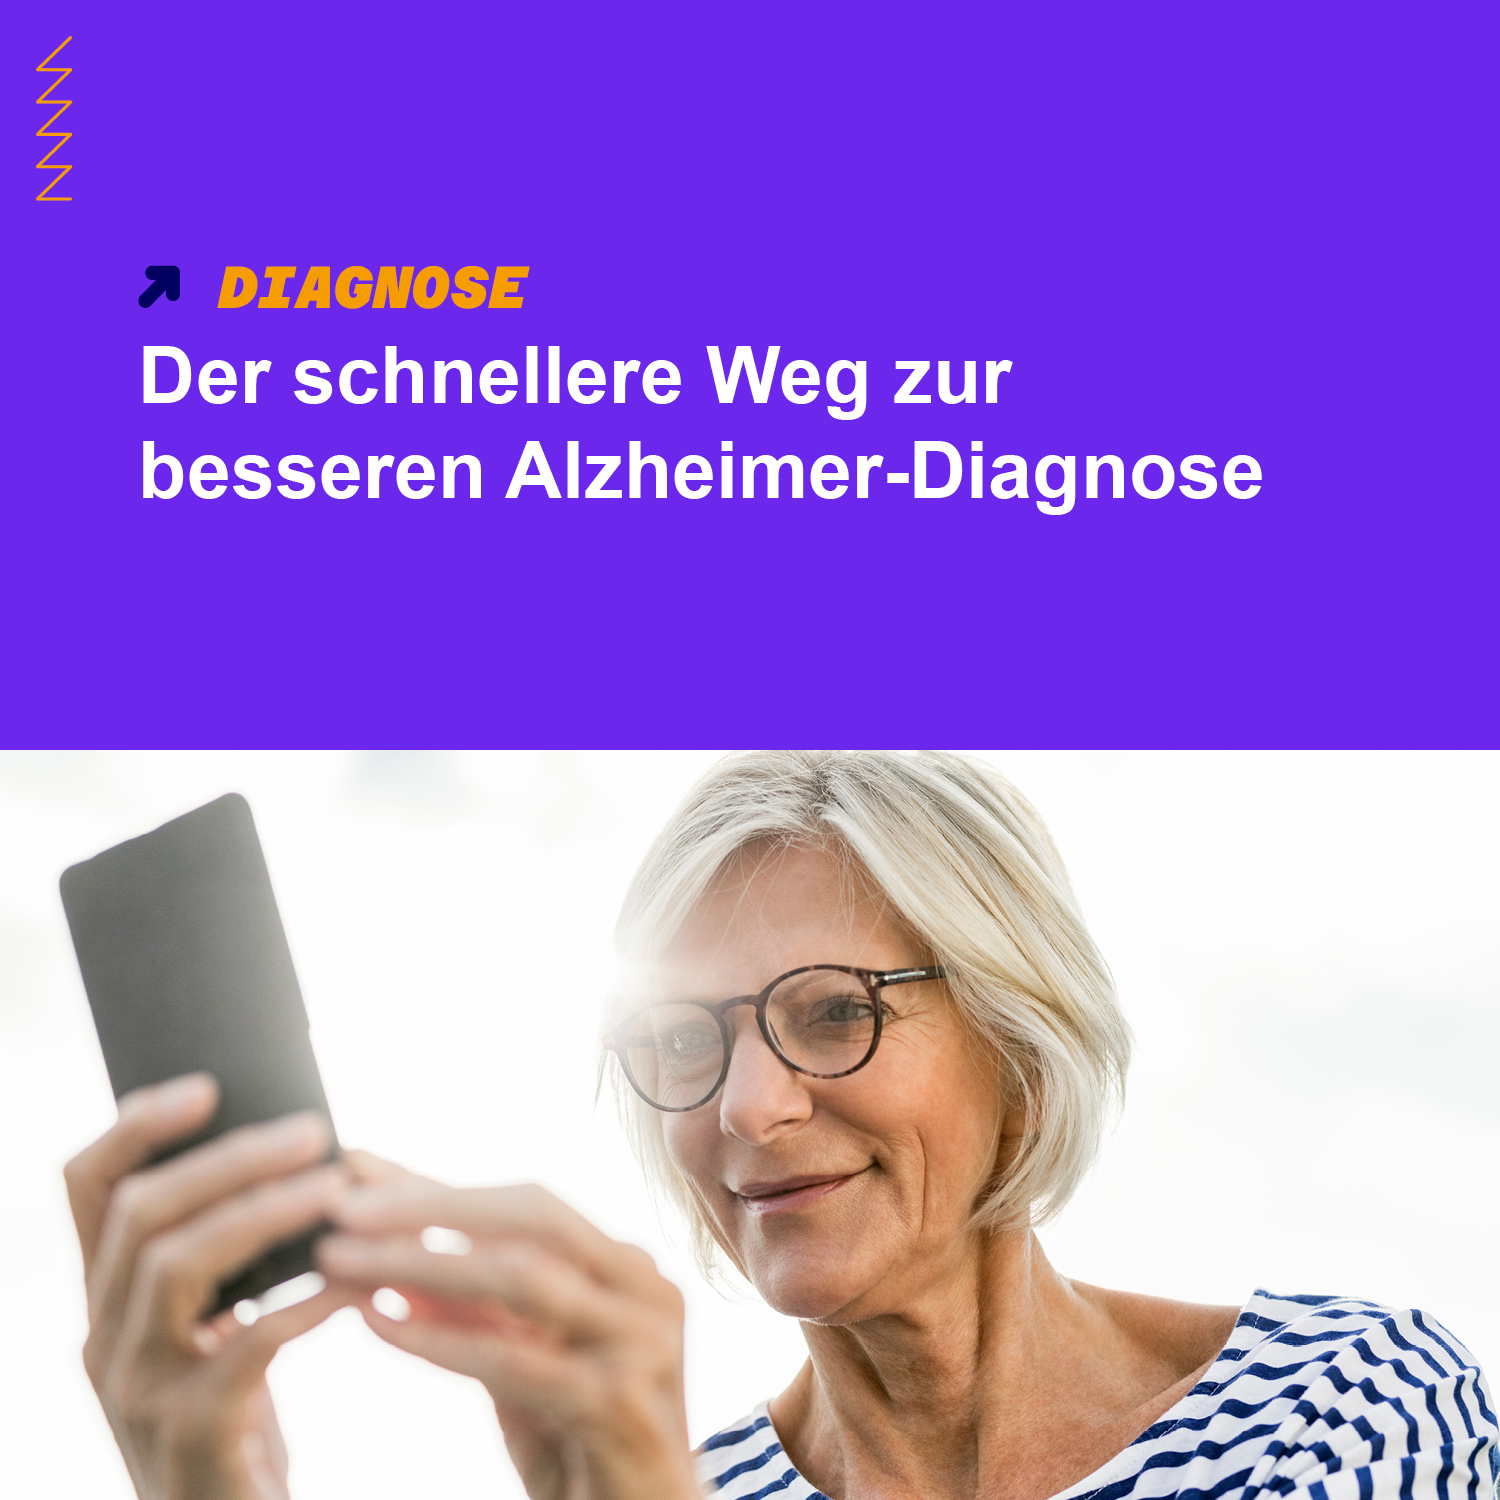 Der schnellere Weg zur besseren Alzheimer-Diagnose